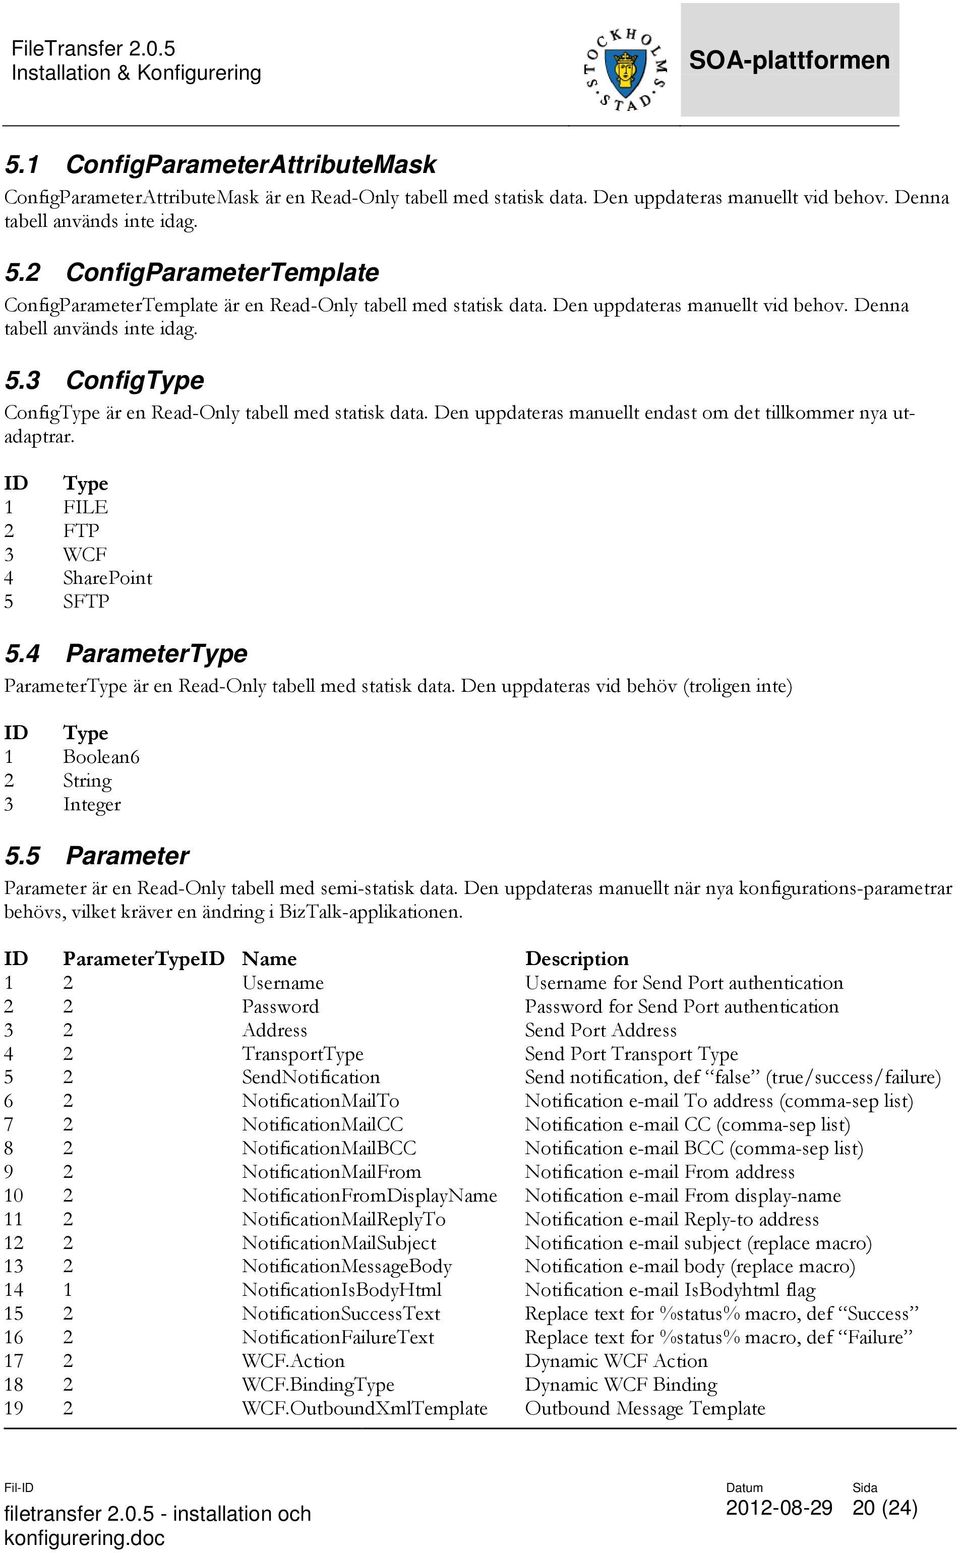 3 ConfigType ConfigType är en Read-Only tabell med statisk data. Den uppdateras manuellt endast om det tillkommer nya utadaptrar. ID Type 1 FILE 2 FTP 3 WCF 4 SharePoint 5 SFTP 5.